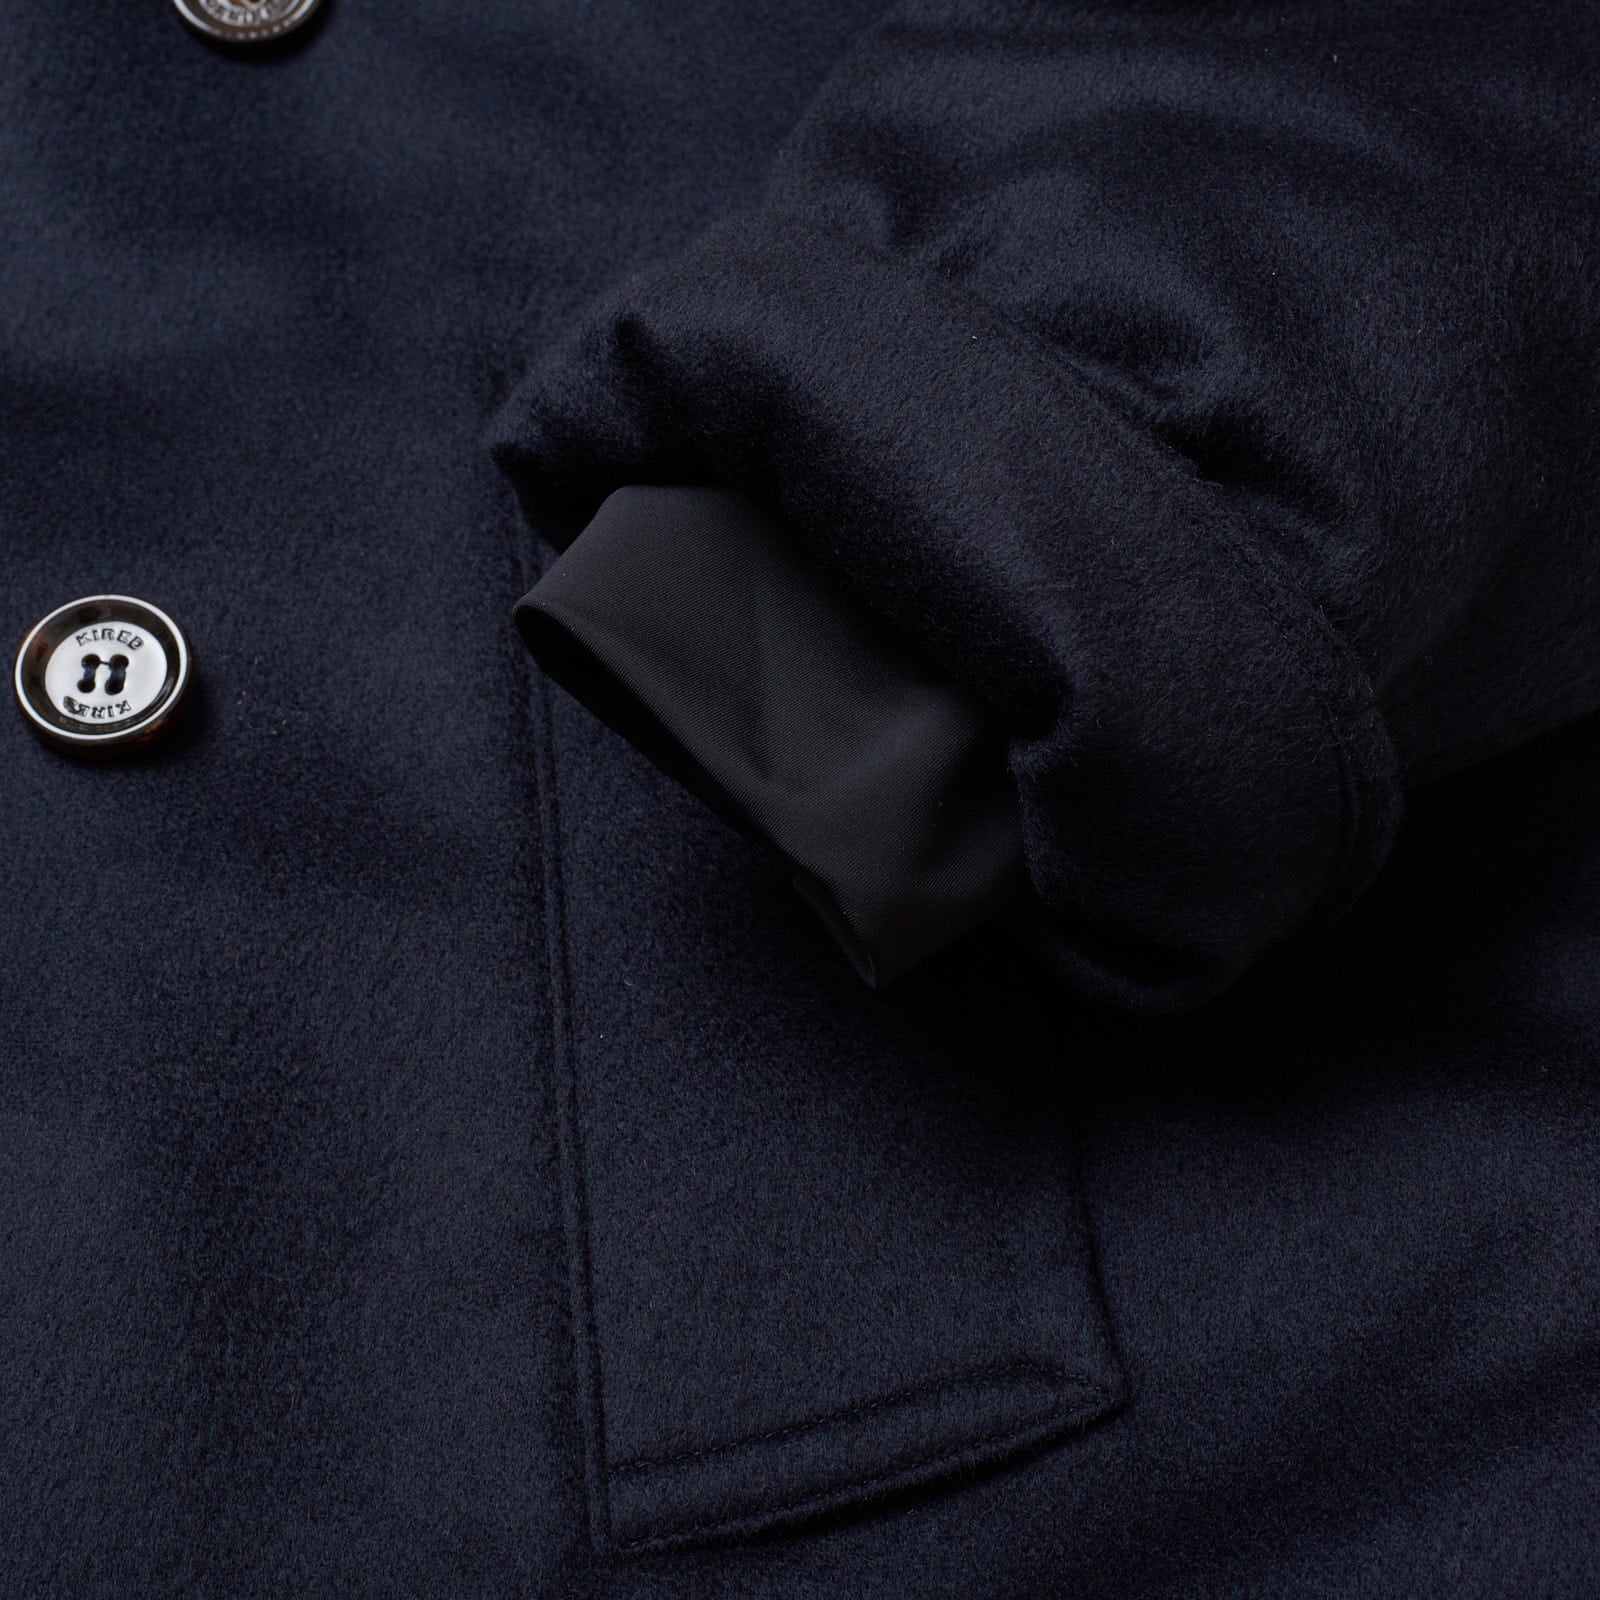 KITON KIRED "Oglio" Navy Blue Cashmere Primaloft DB Pea Coat Jacket EU 50 US 40 KIRED